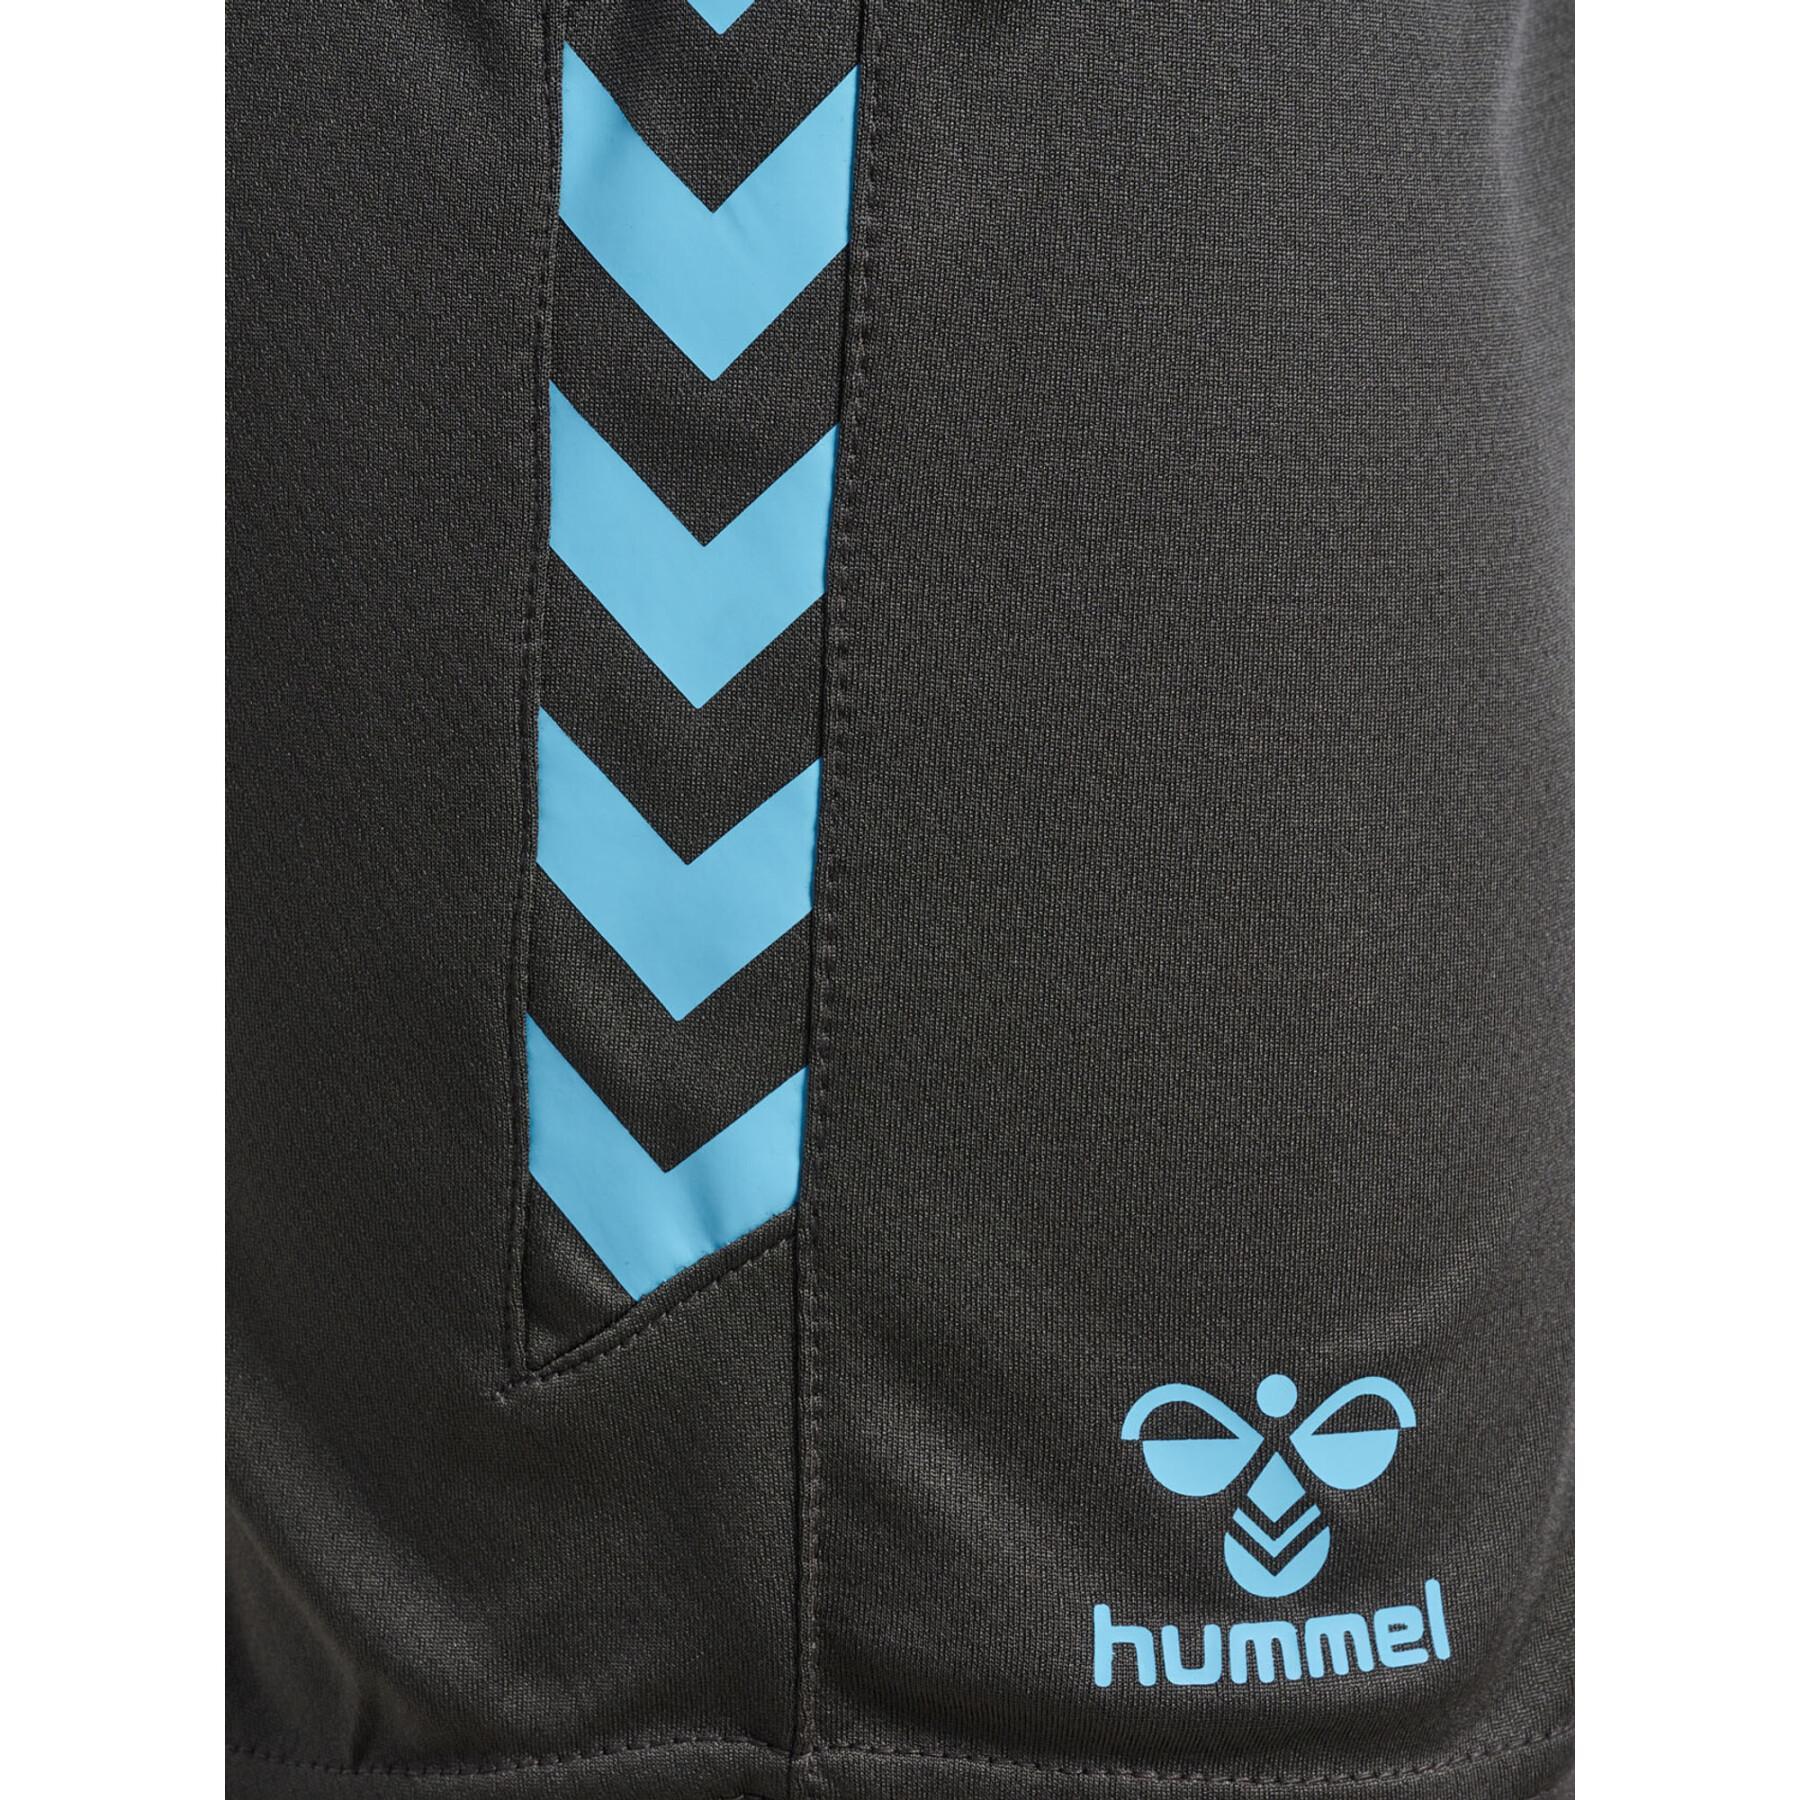 Pantalones cortos de mujer Hummel HmlStaltic